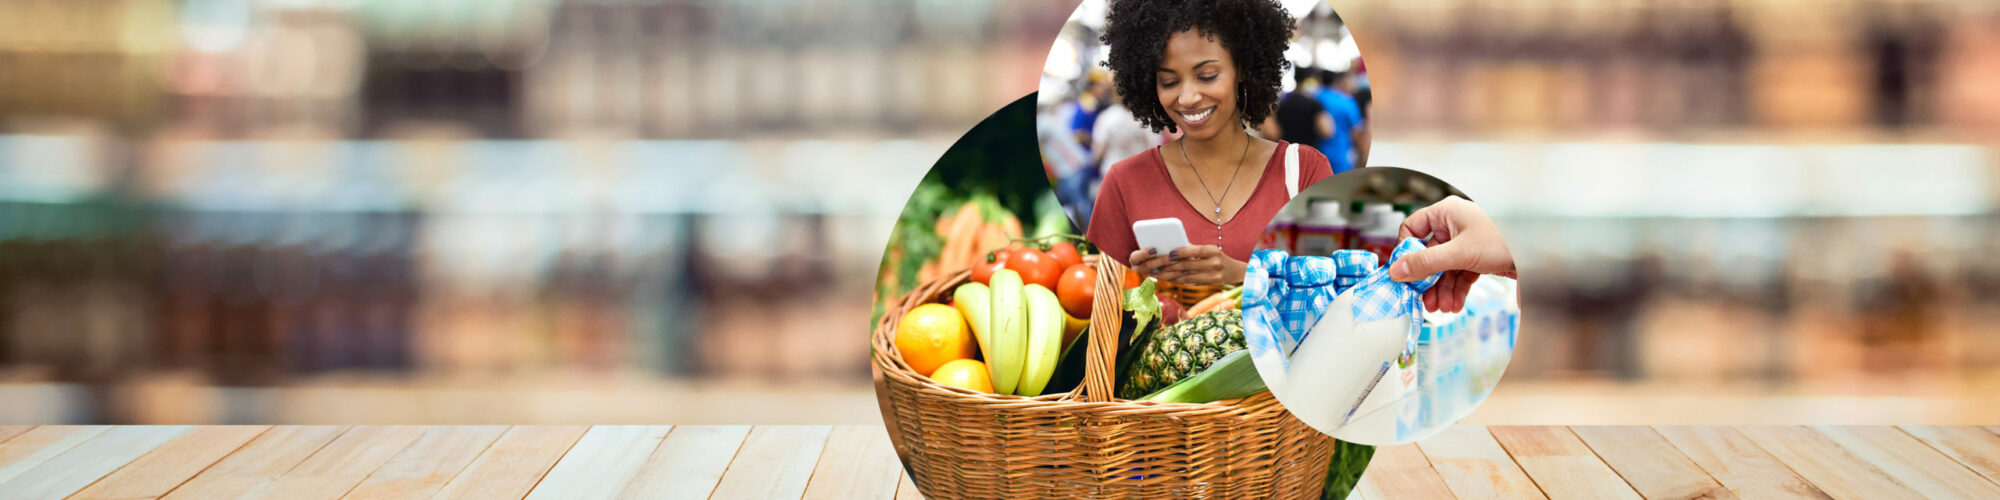 Bild von einer Frau mit Smartphone im Supermarkt, daneben ein Korb voller Obst und Gemüse sowie eine Milchflasche, valantic Branchen: Konsumgüterindustrie